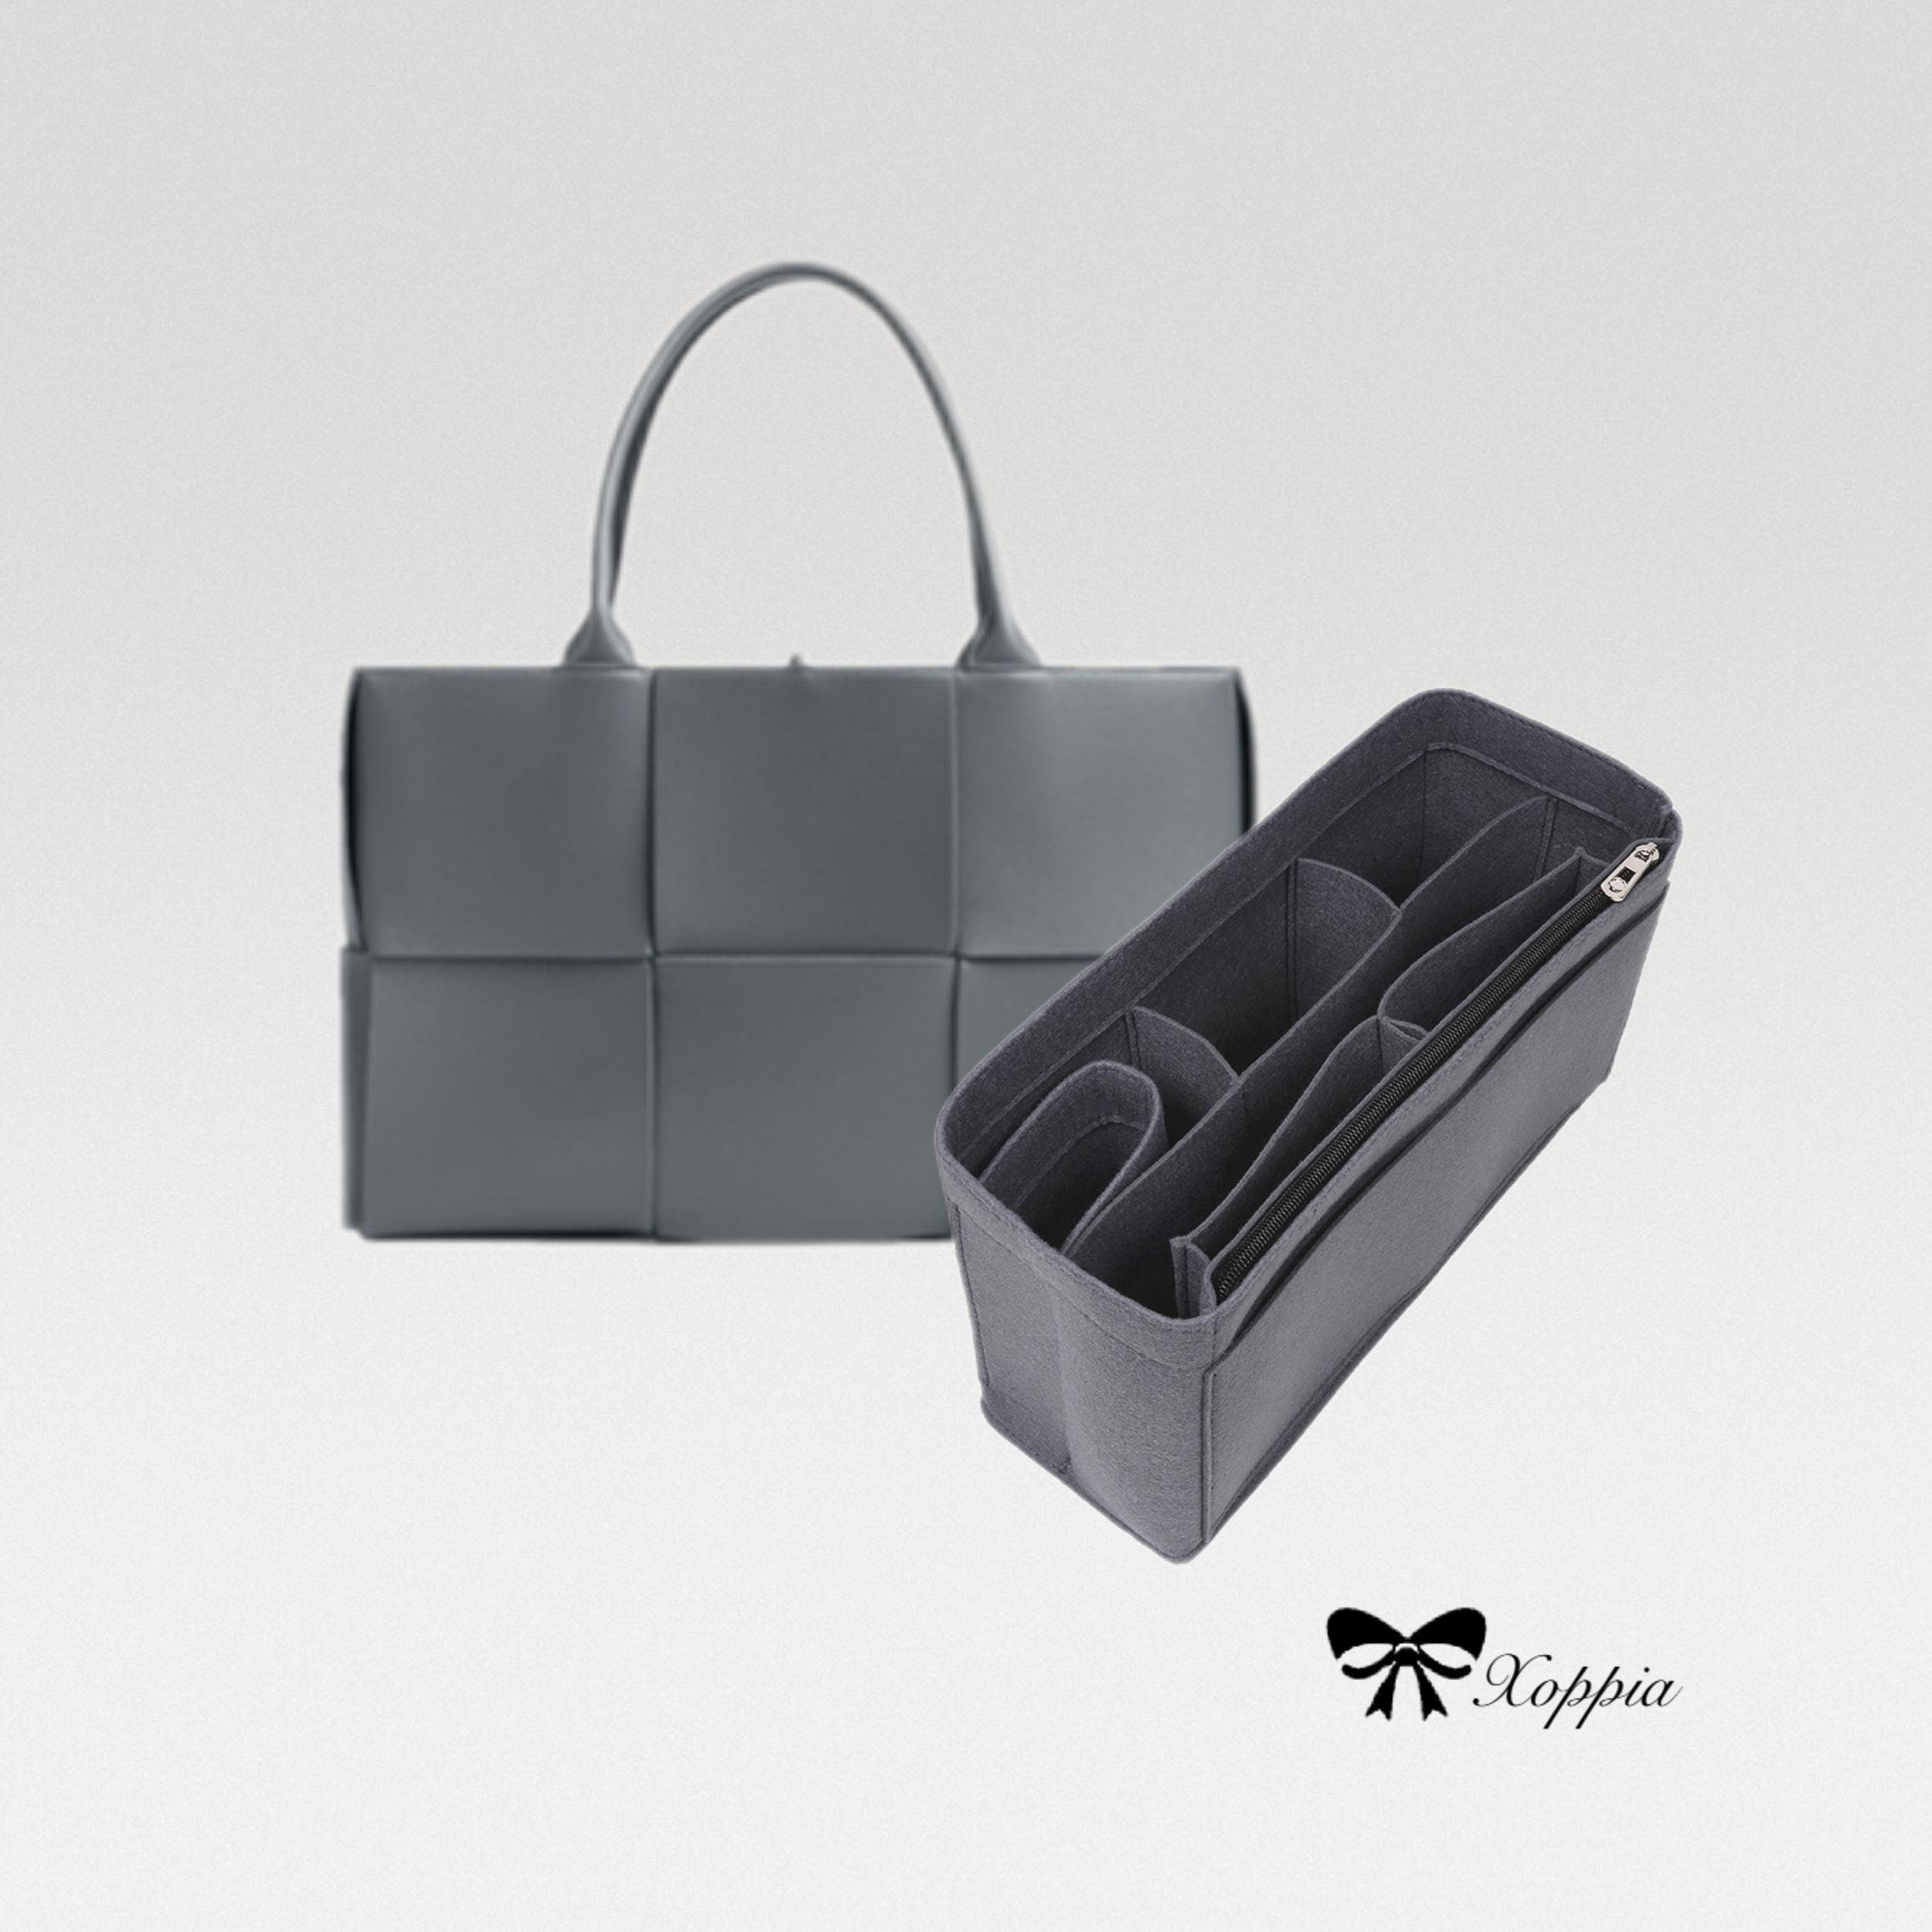 Bag Organiser Bag Insert for Bottega Veneta Arco Leather Tote Bag